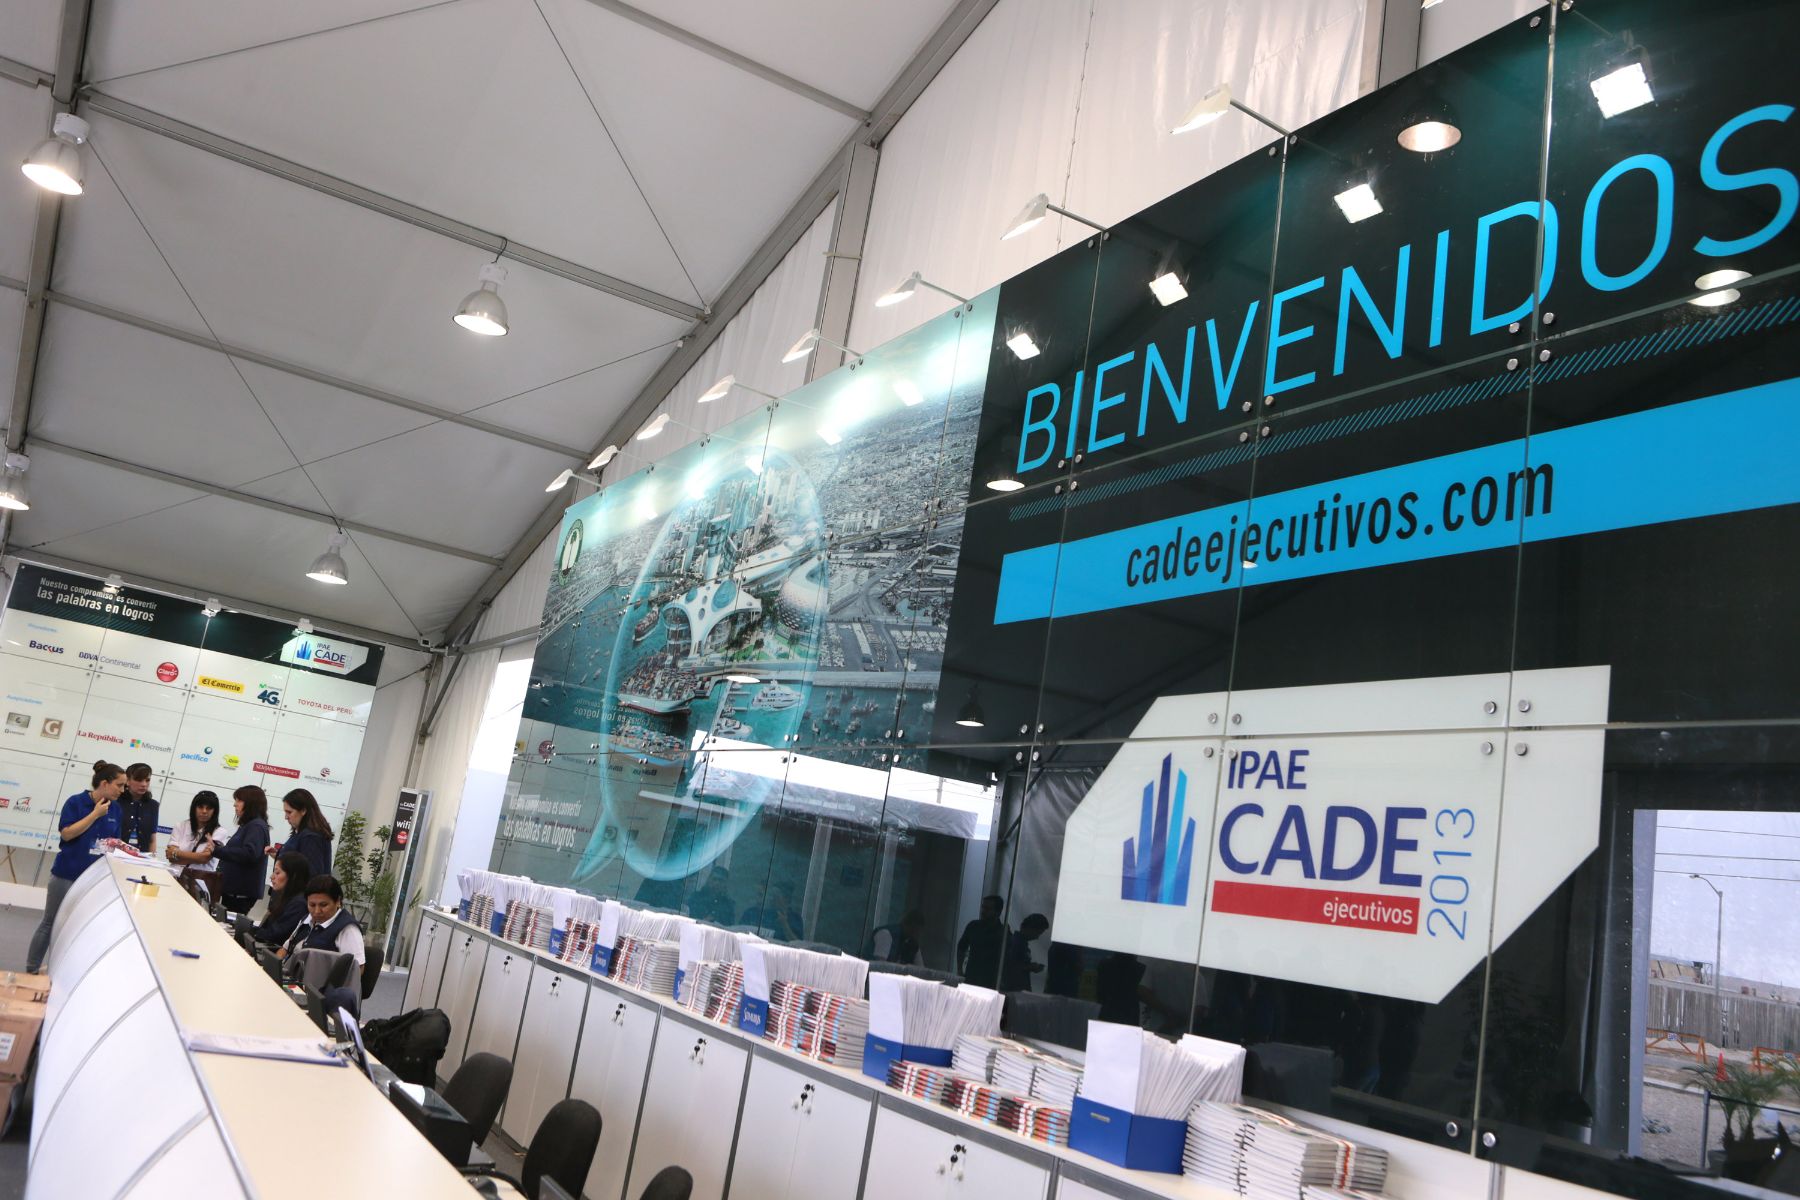 PARACAS,PERÚ,NOVIEMBRE 26.Hoy se inaugura la 51 edición de CADE Ejecutivos - CADE 2013 en Paracas, Pisco, cuyo lema es "Renovando el Espíritu de Paracas", y reunirá a unos 1,000 empresarios de todo el país.Foto: ANDINA/Carlos Lezama.